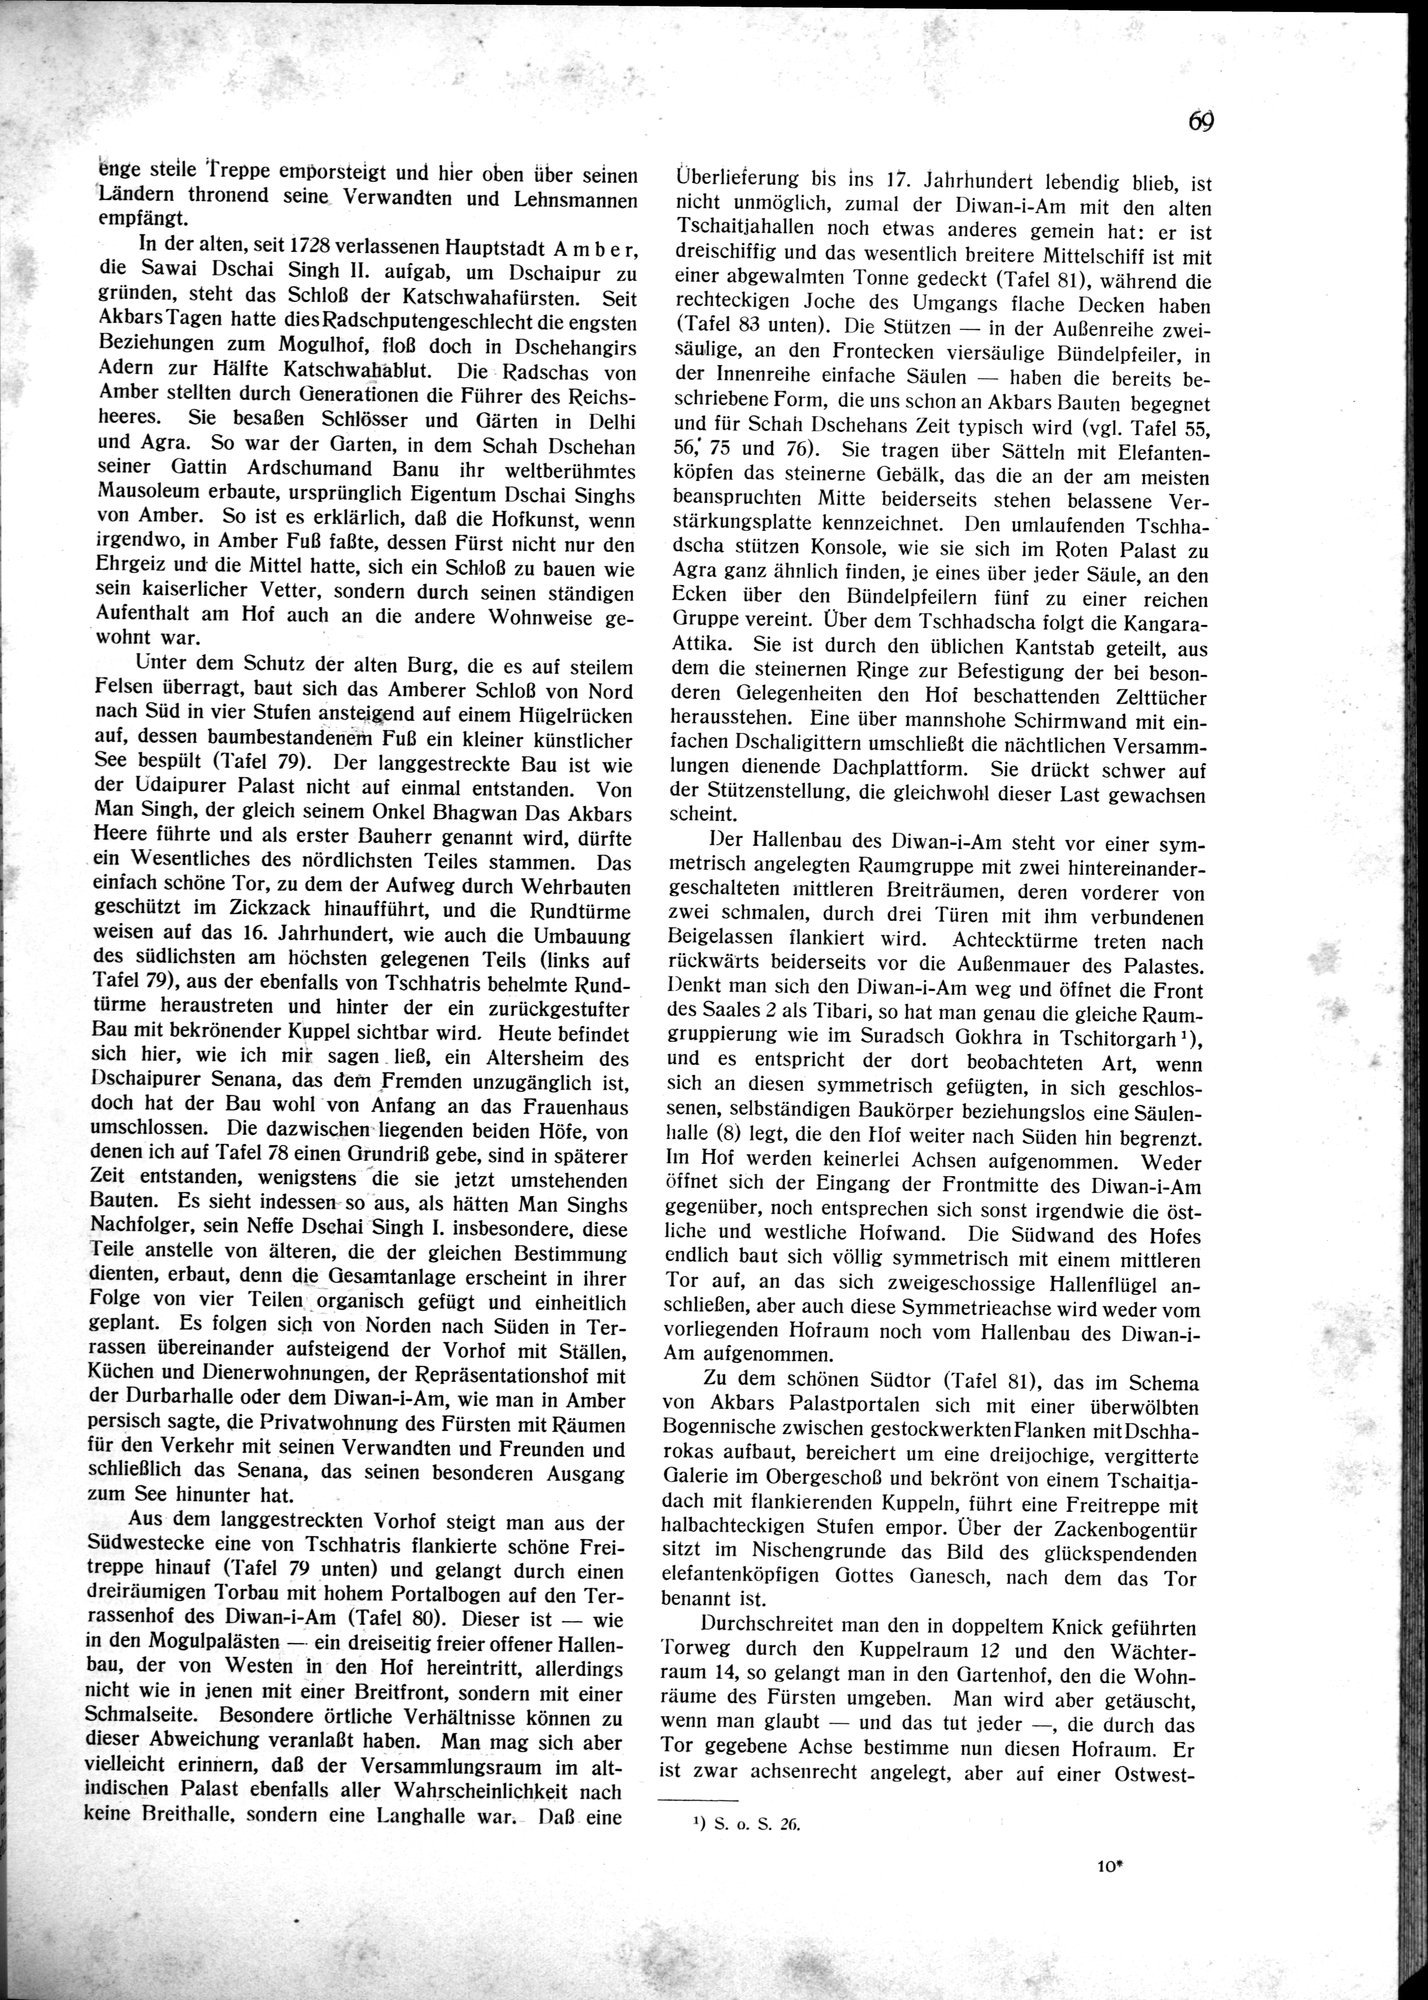 Indische Palaste und Wohnhauser : vol.1 / Page 79 (Grayscale High Resolution Image)